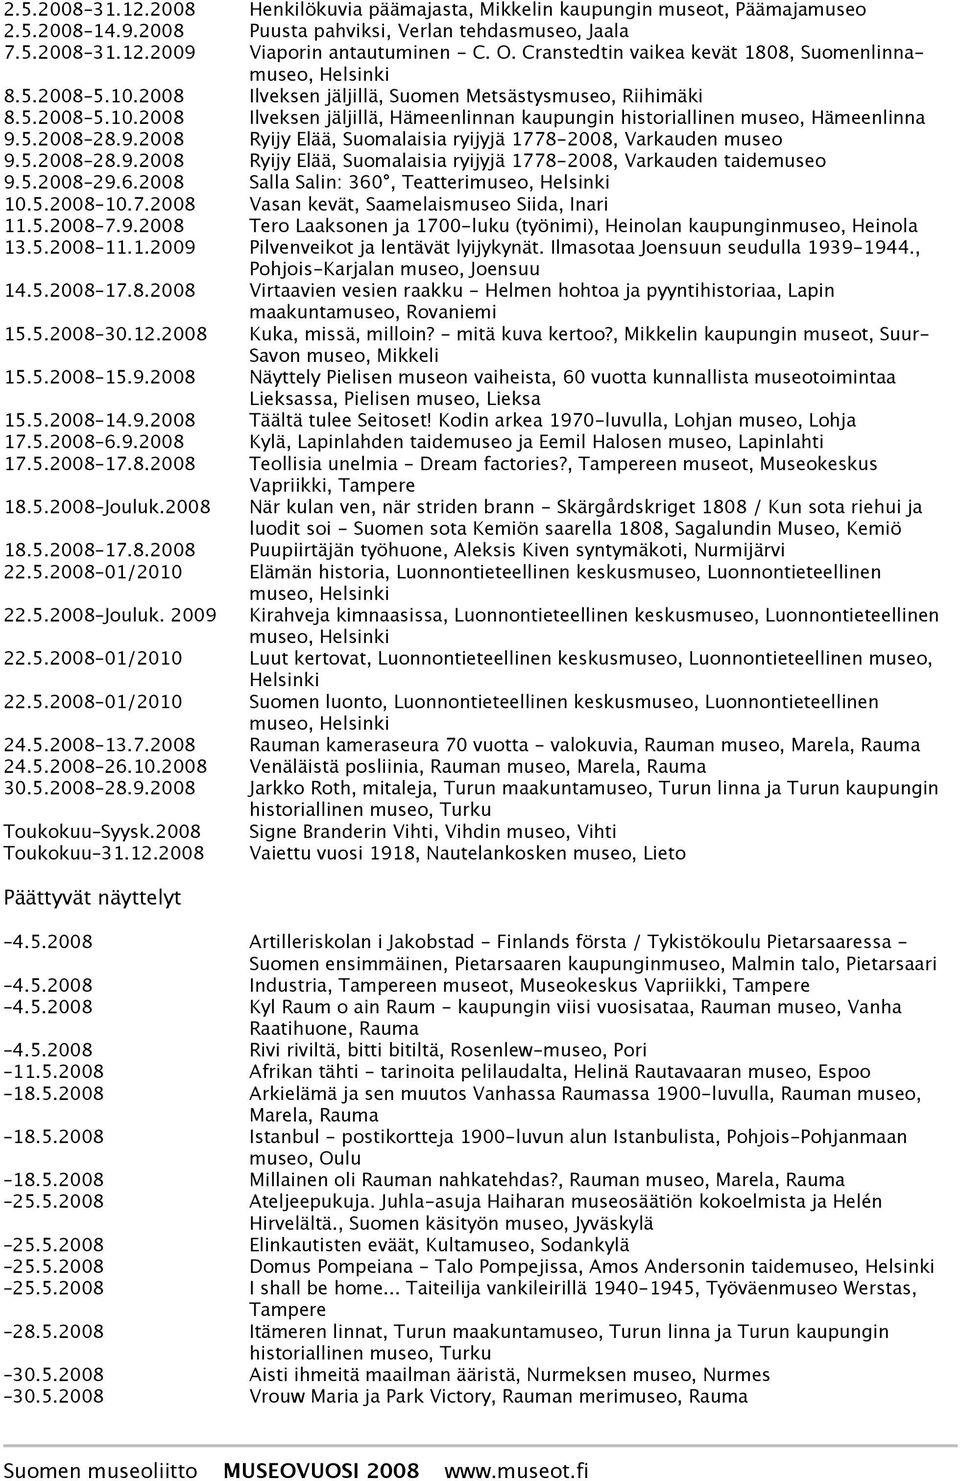 5.2008 28.9.2008 Ryijy Elää, Suomalaisia ryijyjä 1778-2008, Varkauden museo 9.5.2008 28.9.2008 Ryijy Elää, Suomalaisia ryijyjä 1778-2008, Varkauden taidemuseo 9.5.2008 29.6.